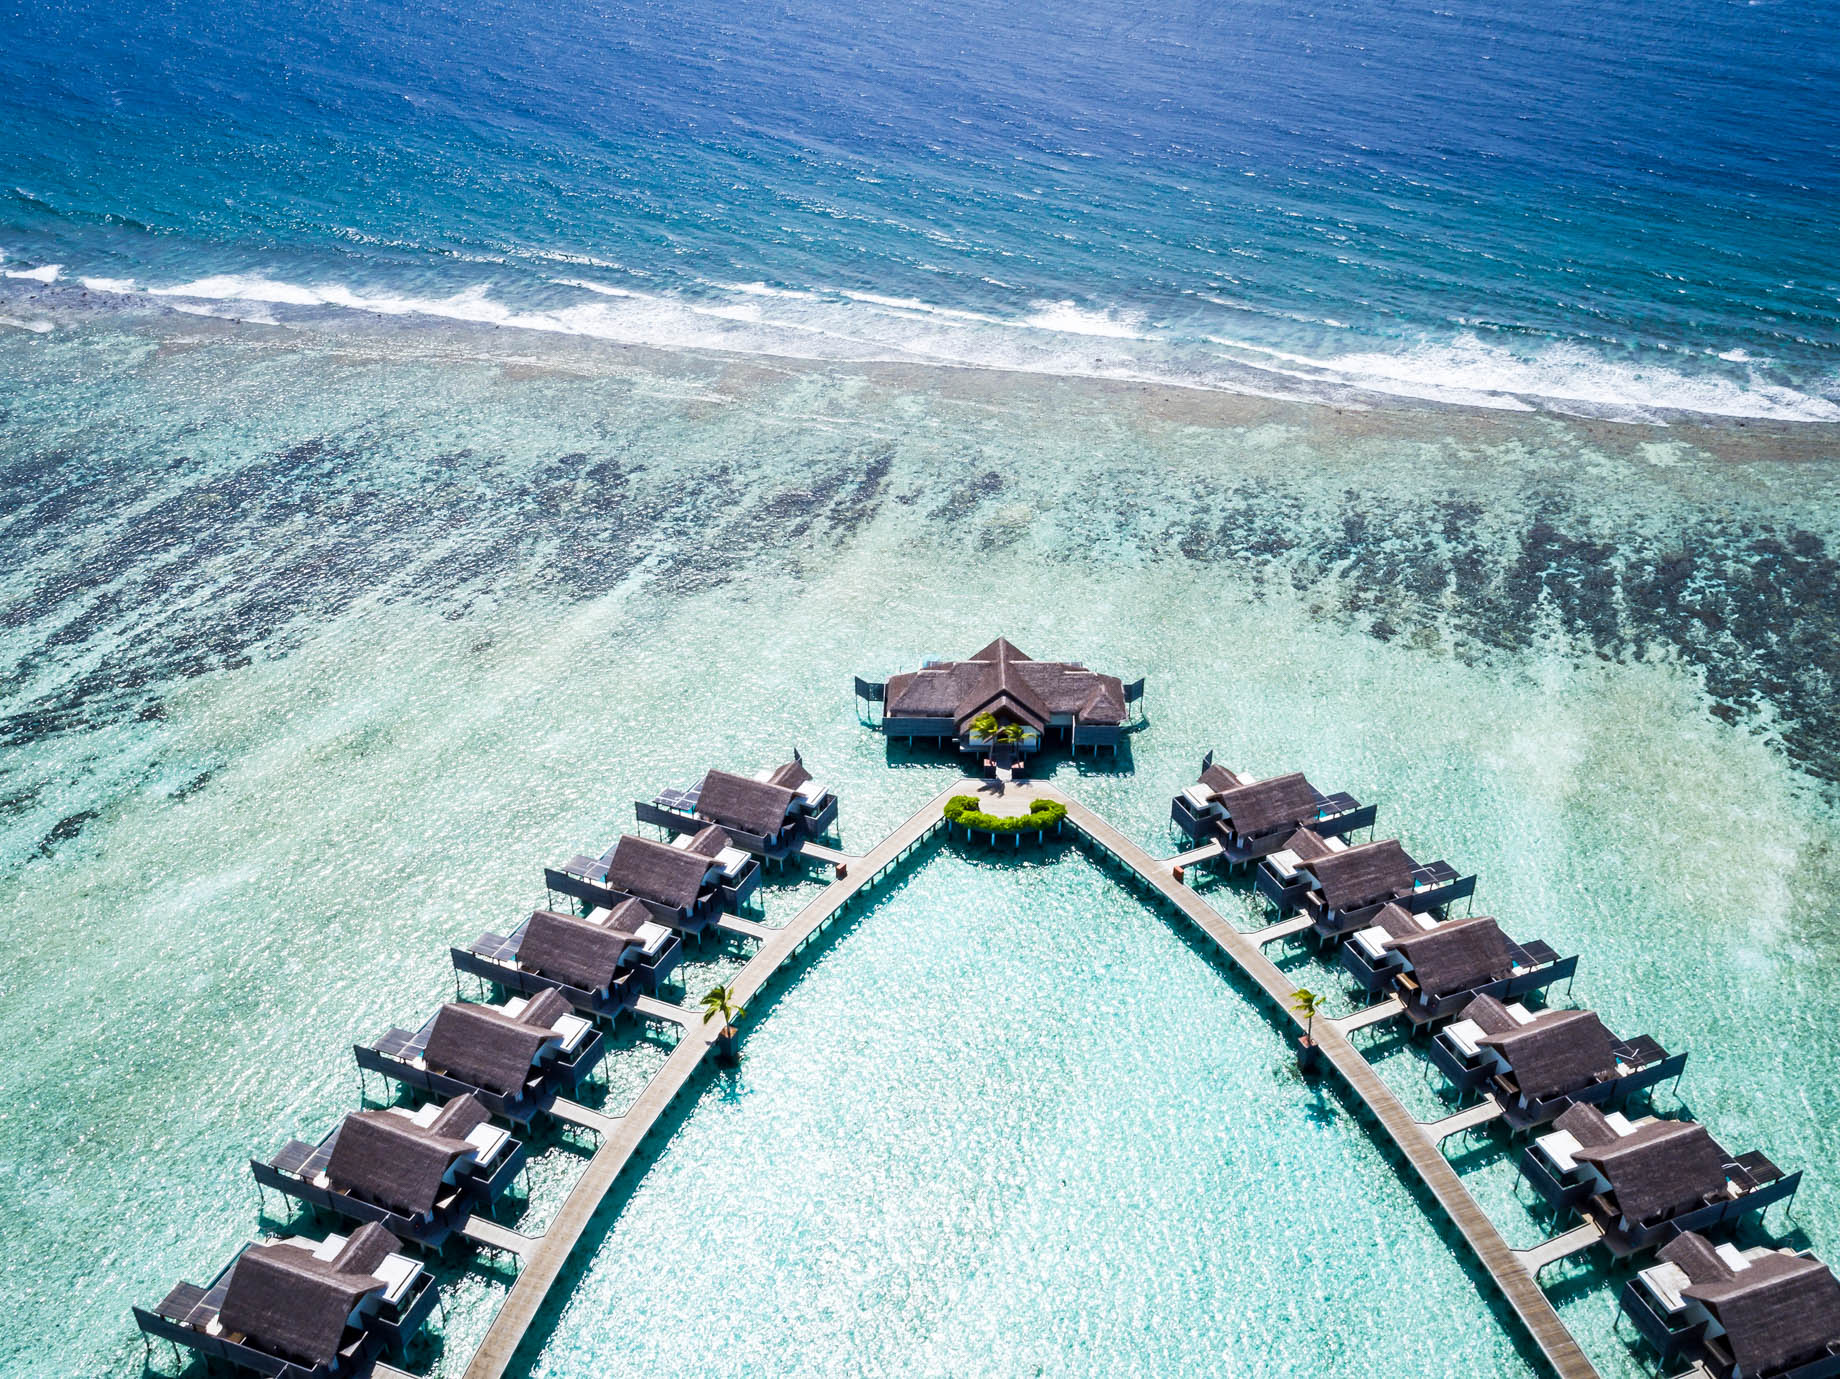 Niyama Private Islands Maldives Resort – Dhaalu Atoll, Maldives – Aerial View